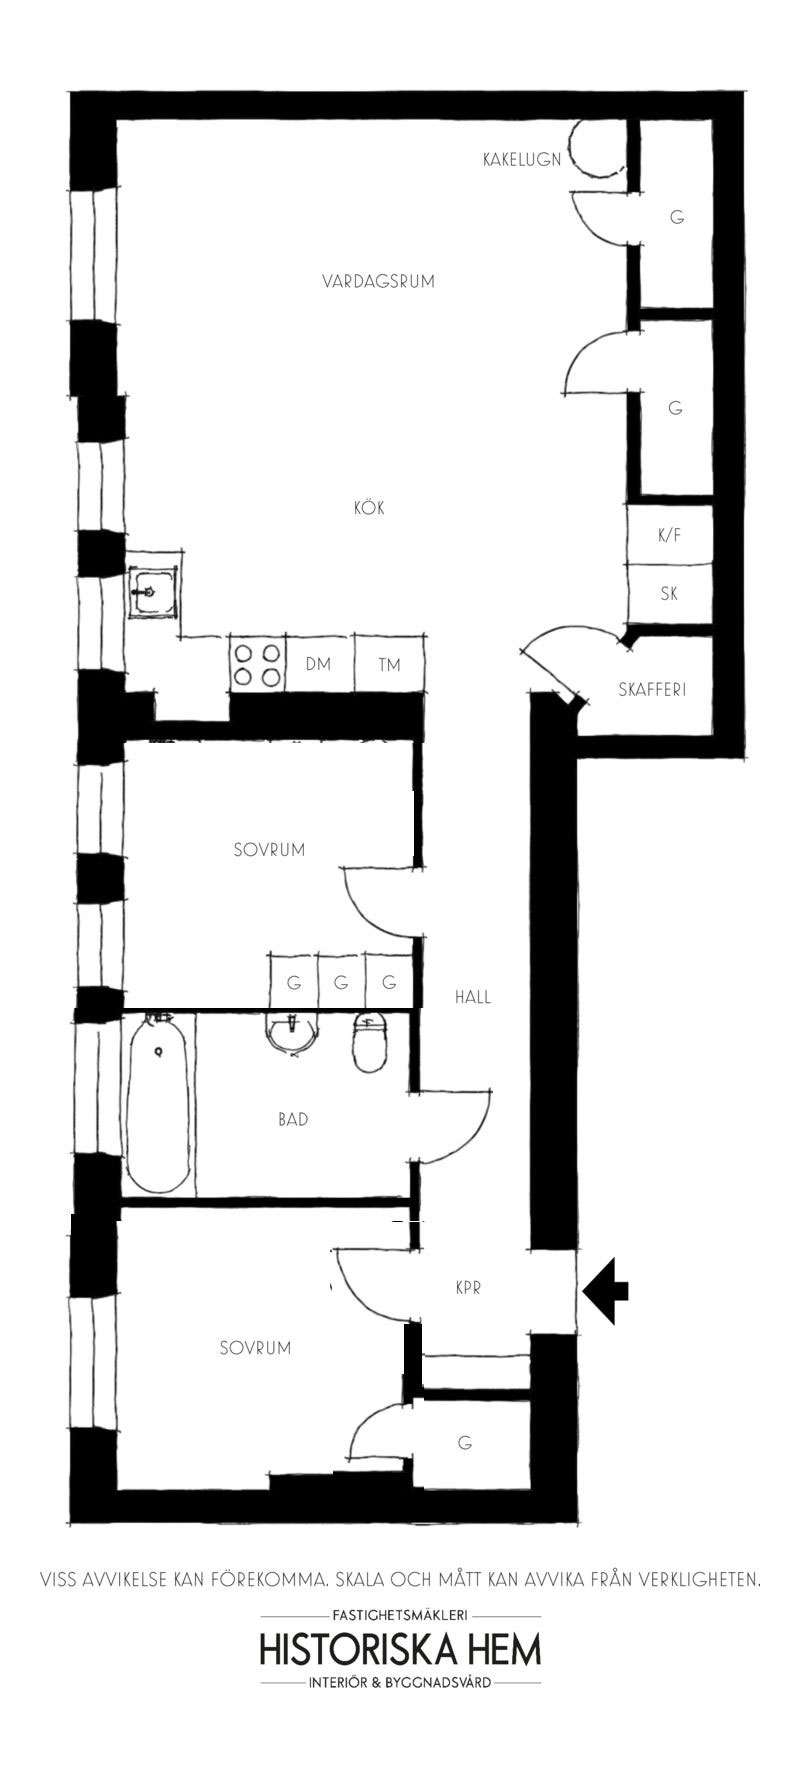 Уютная желтая кухня и другие цветовые акценты в дизайне скандинавской квартиры (78 кв. м)